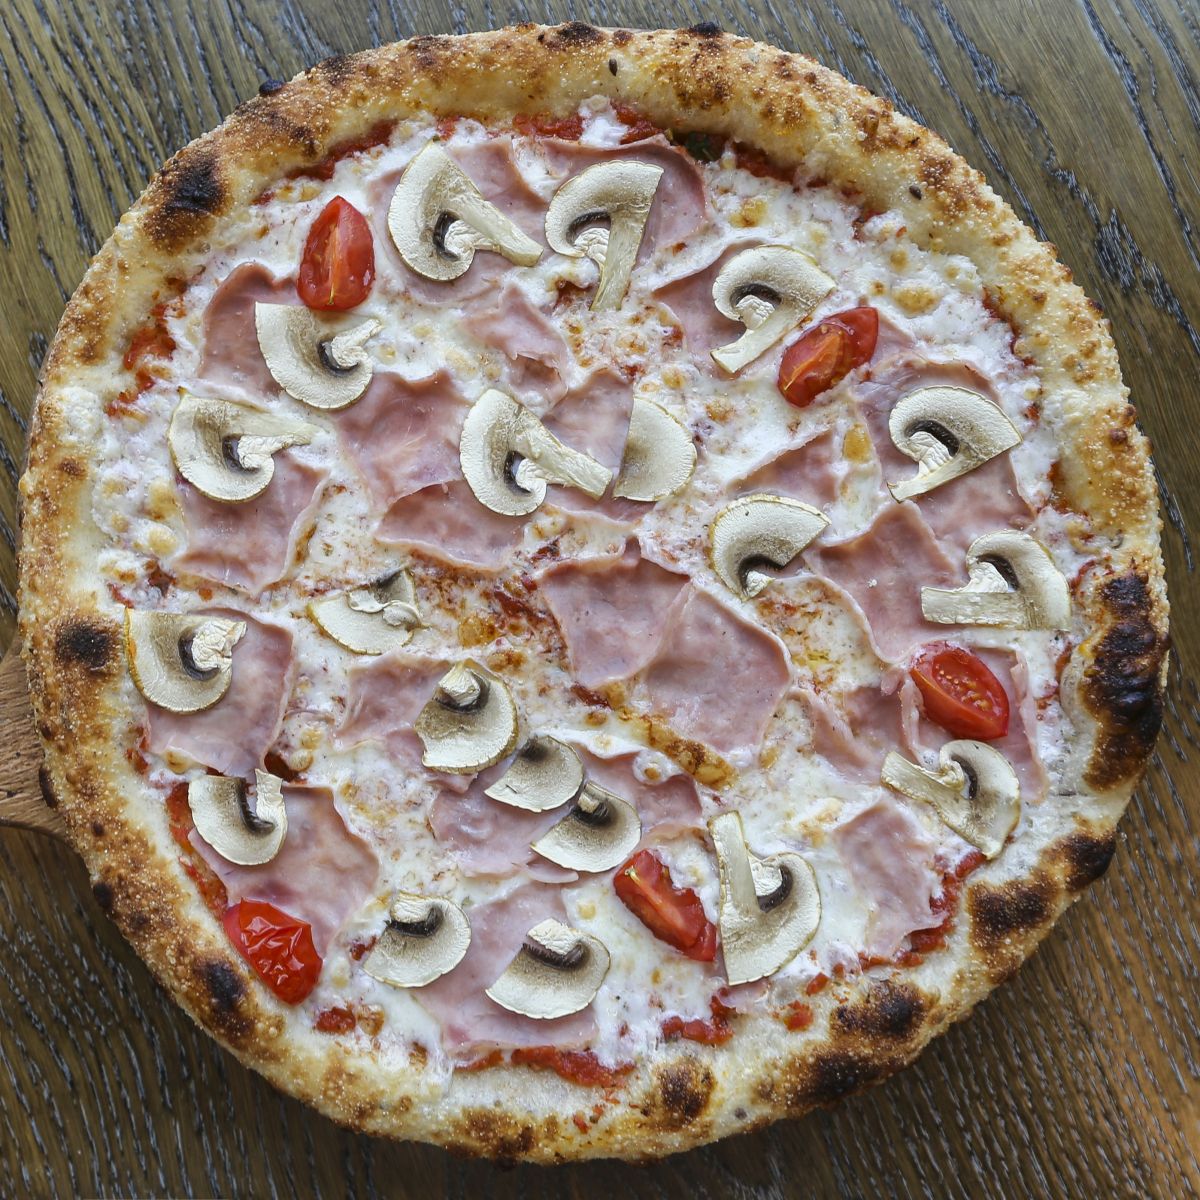 Пицца Грибная с ветчиной 30 см